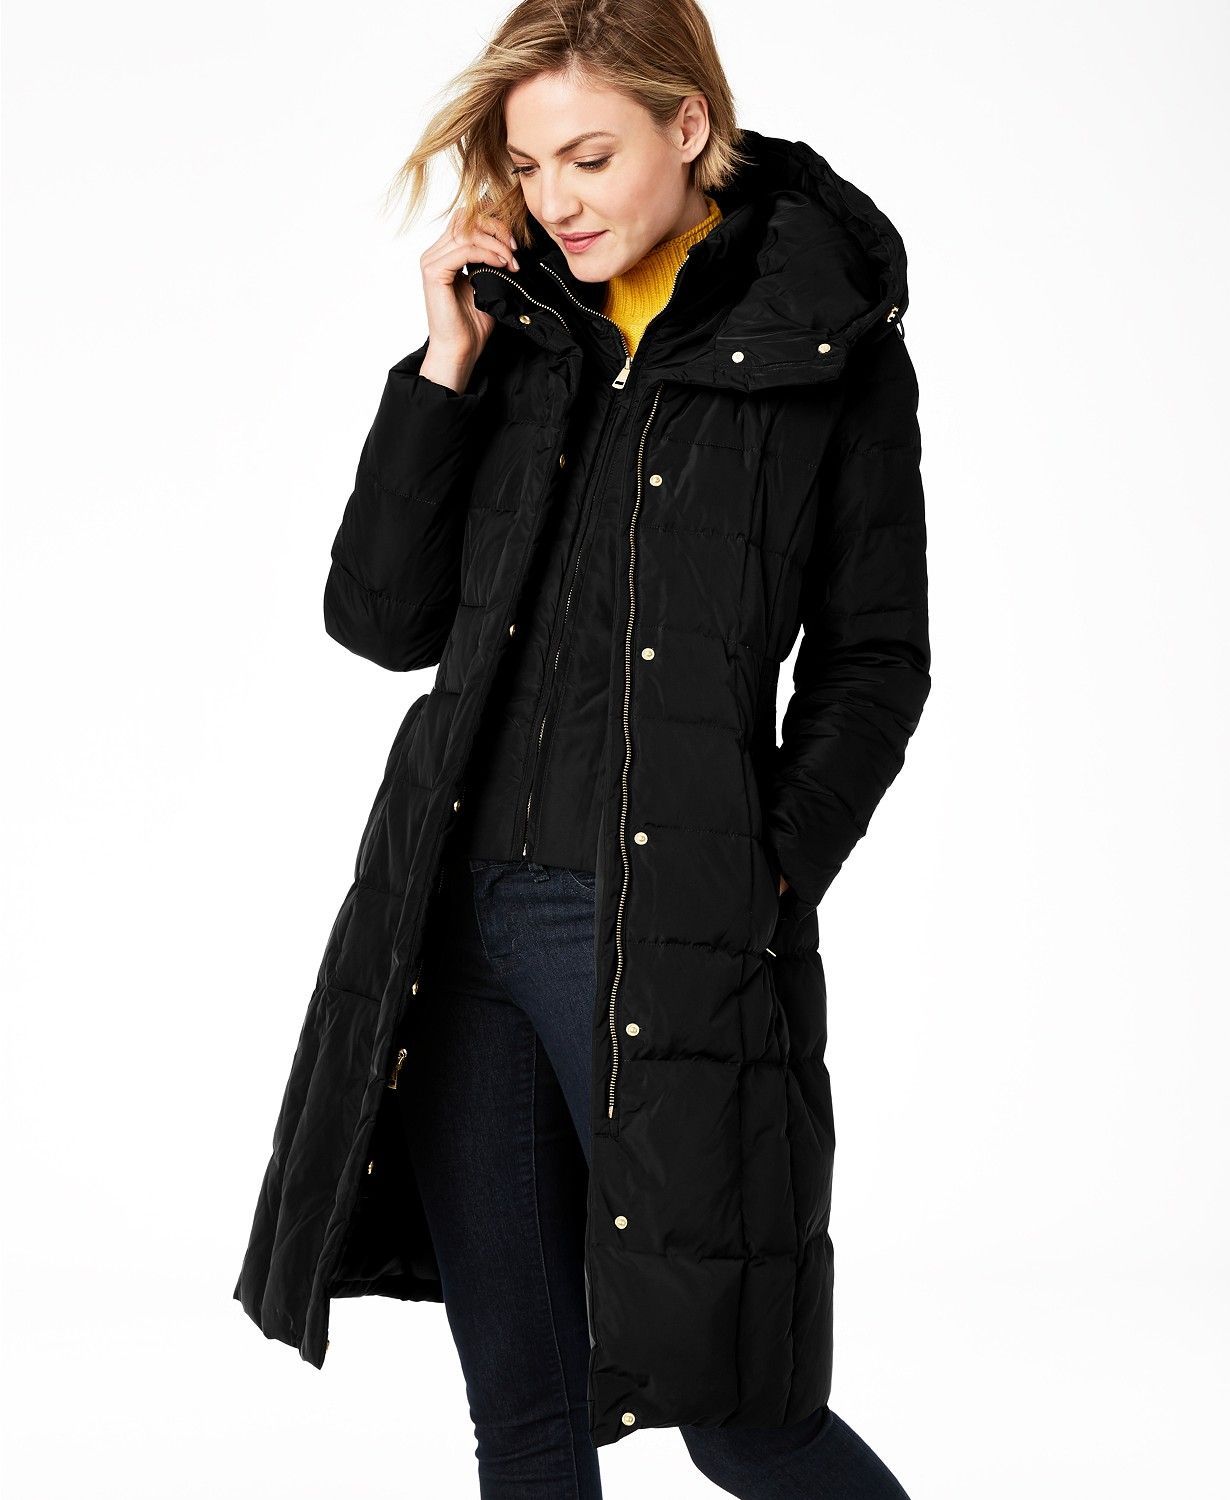 Womens Winter Warm Slim Trench Coat Long Wool Jacket Parka Cardigans Outwear Hot